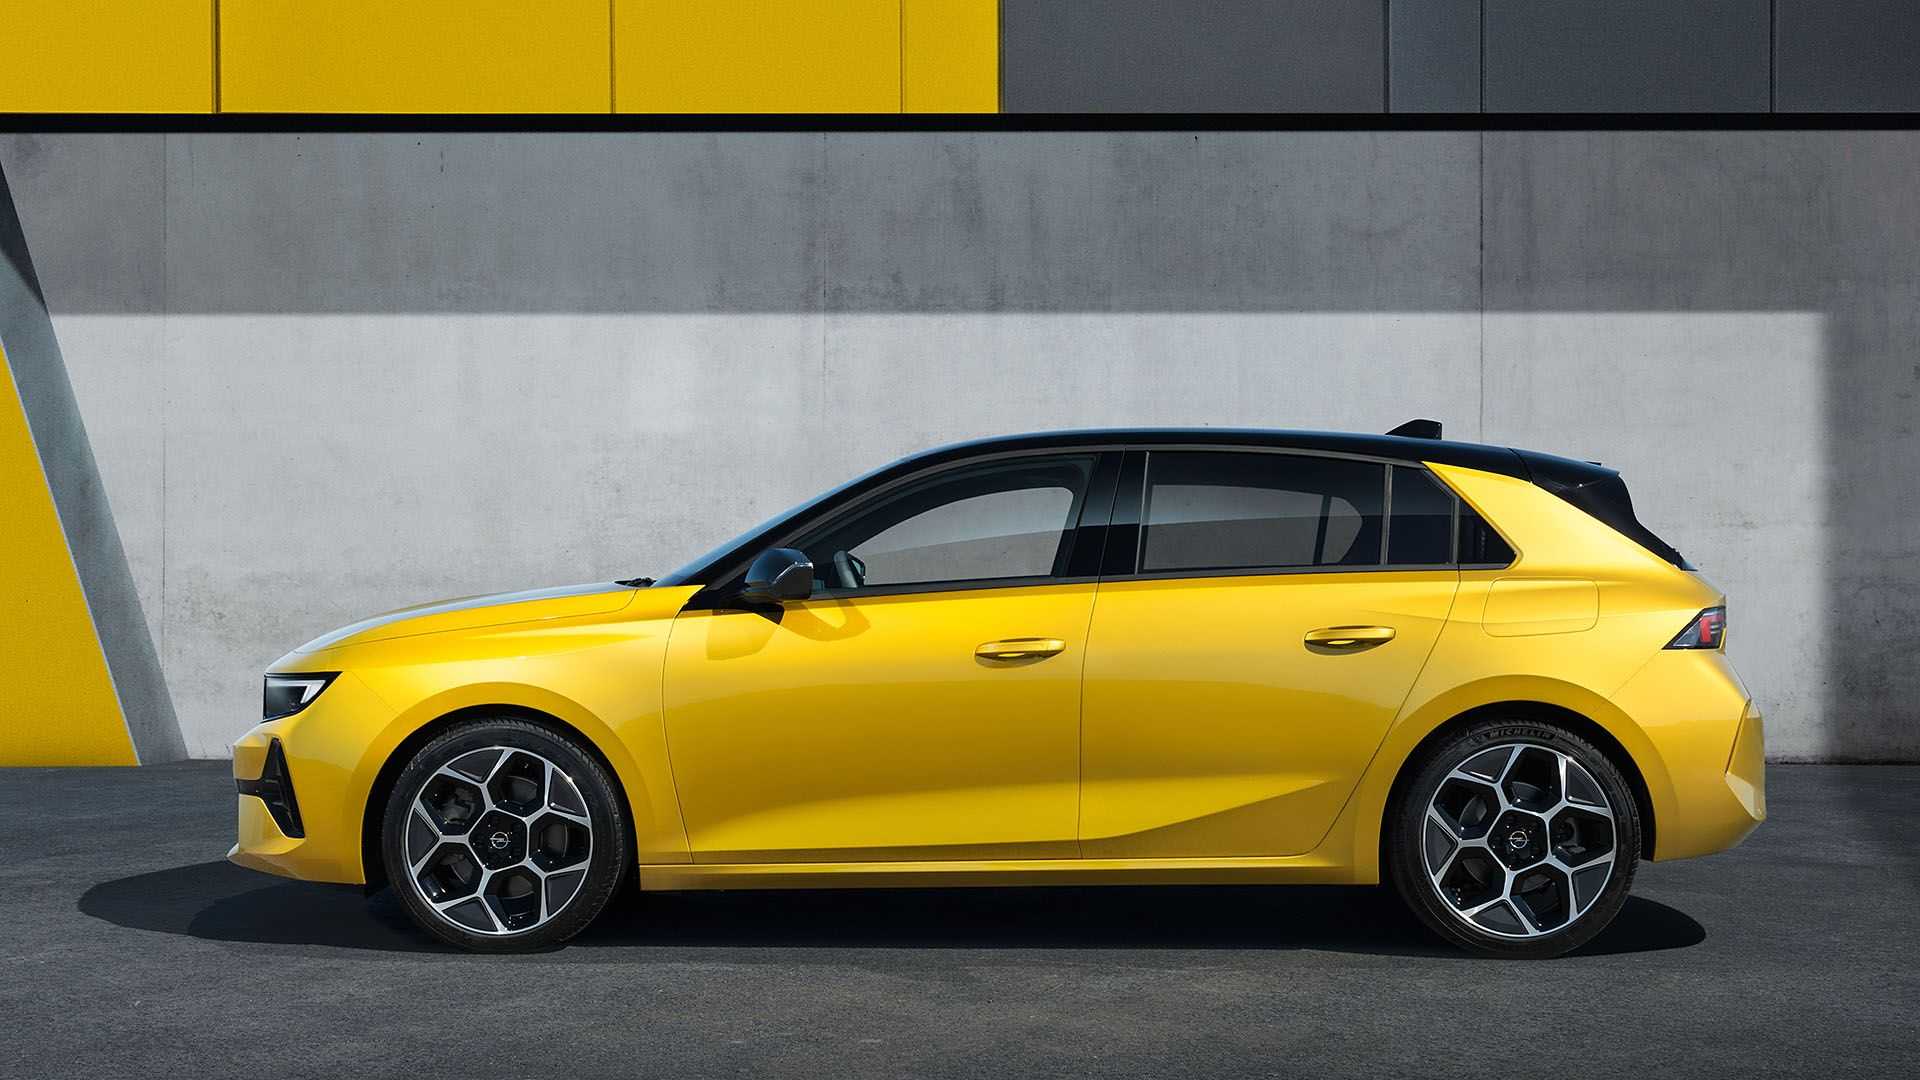 В декабре 2021 года с конвейера снимут Opel Astra пятого поколения (фото)